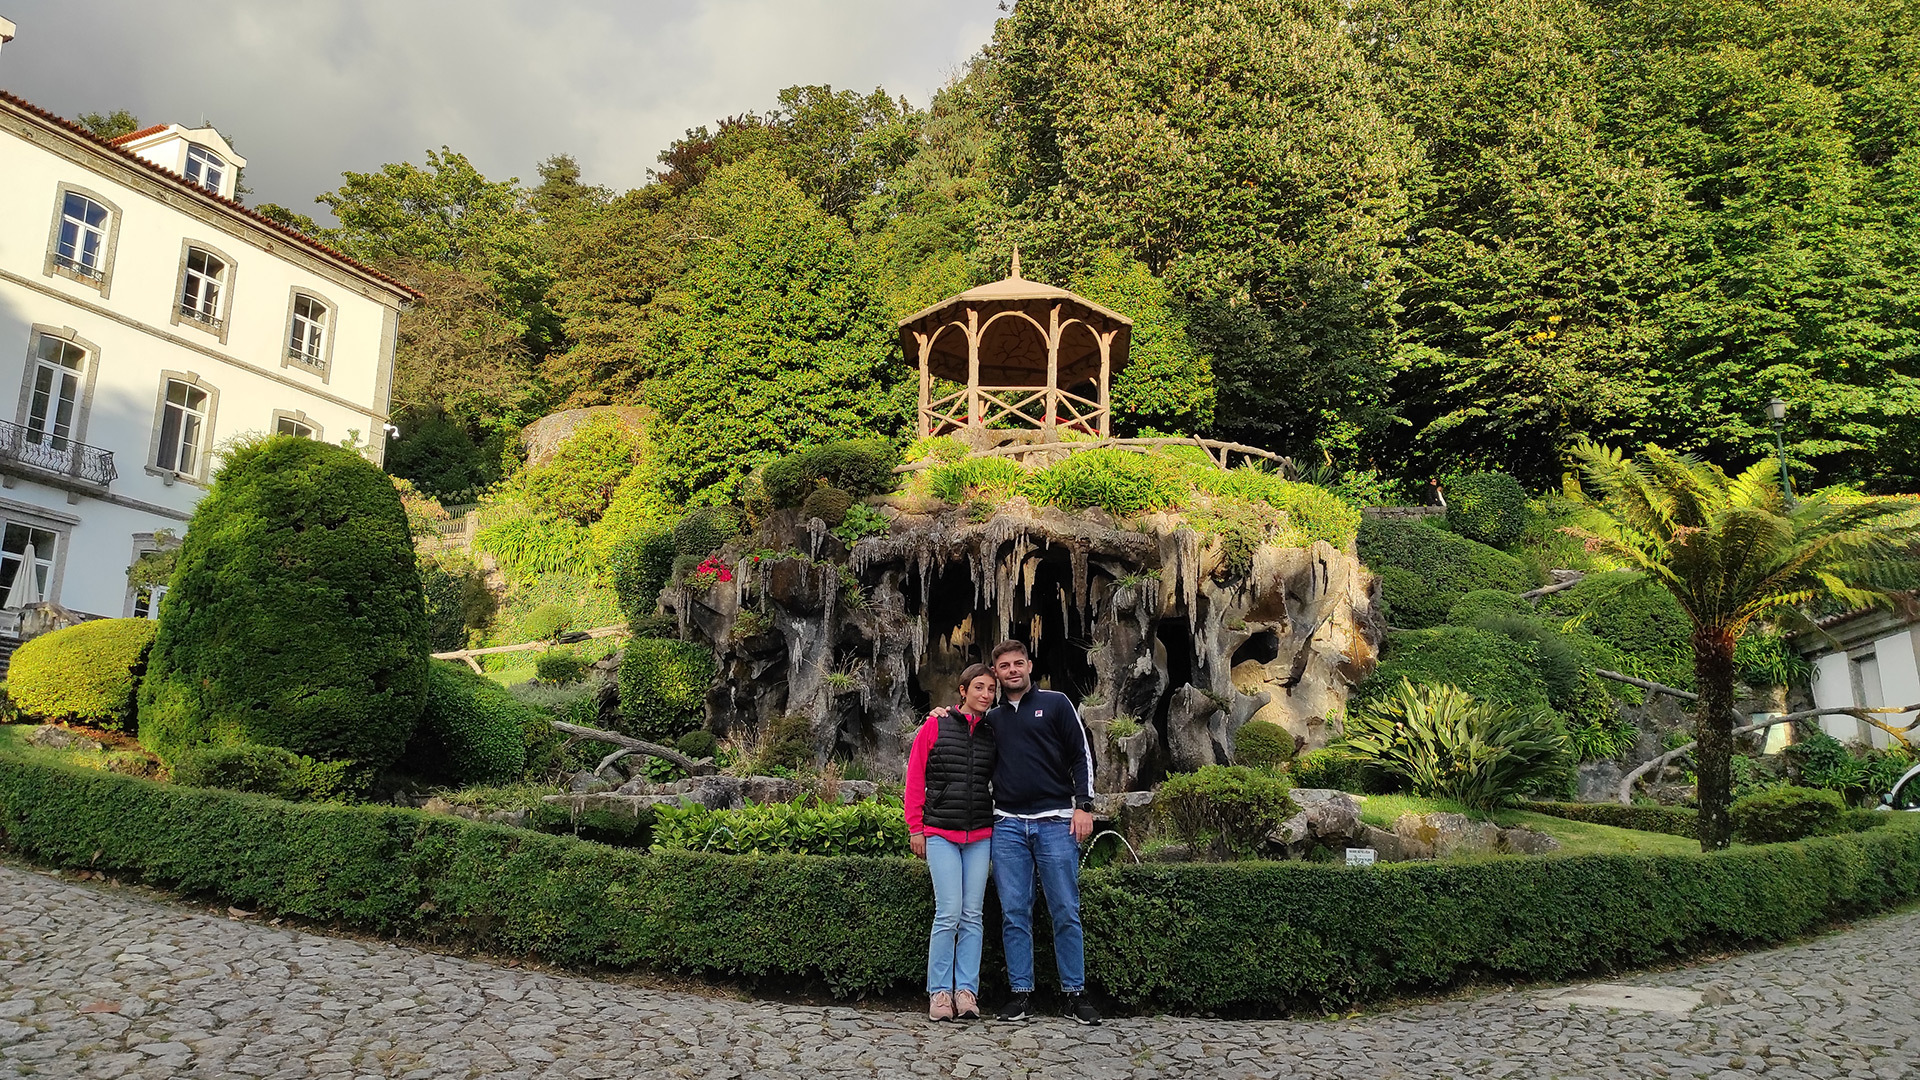 Bom Jesus couple in gardens Braga